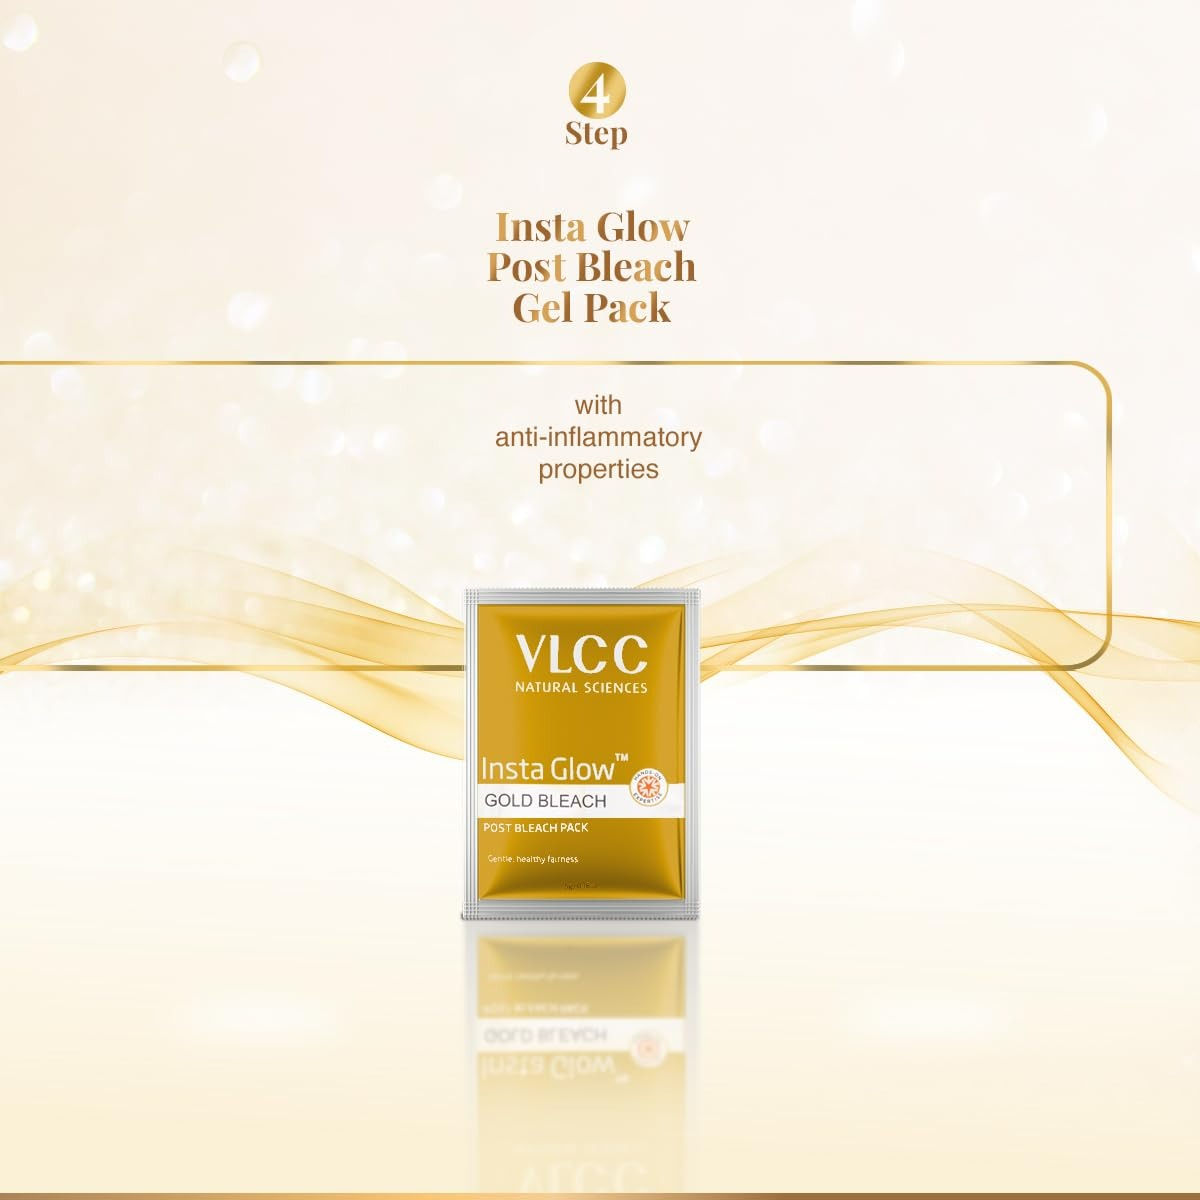 VLCC Insta Glow Gold Bleach - Distacart